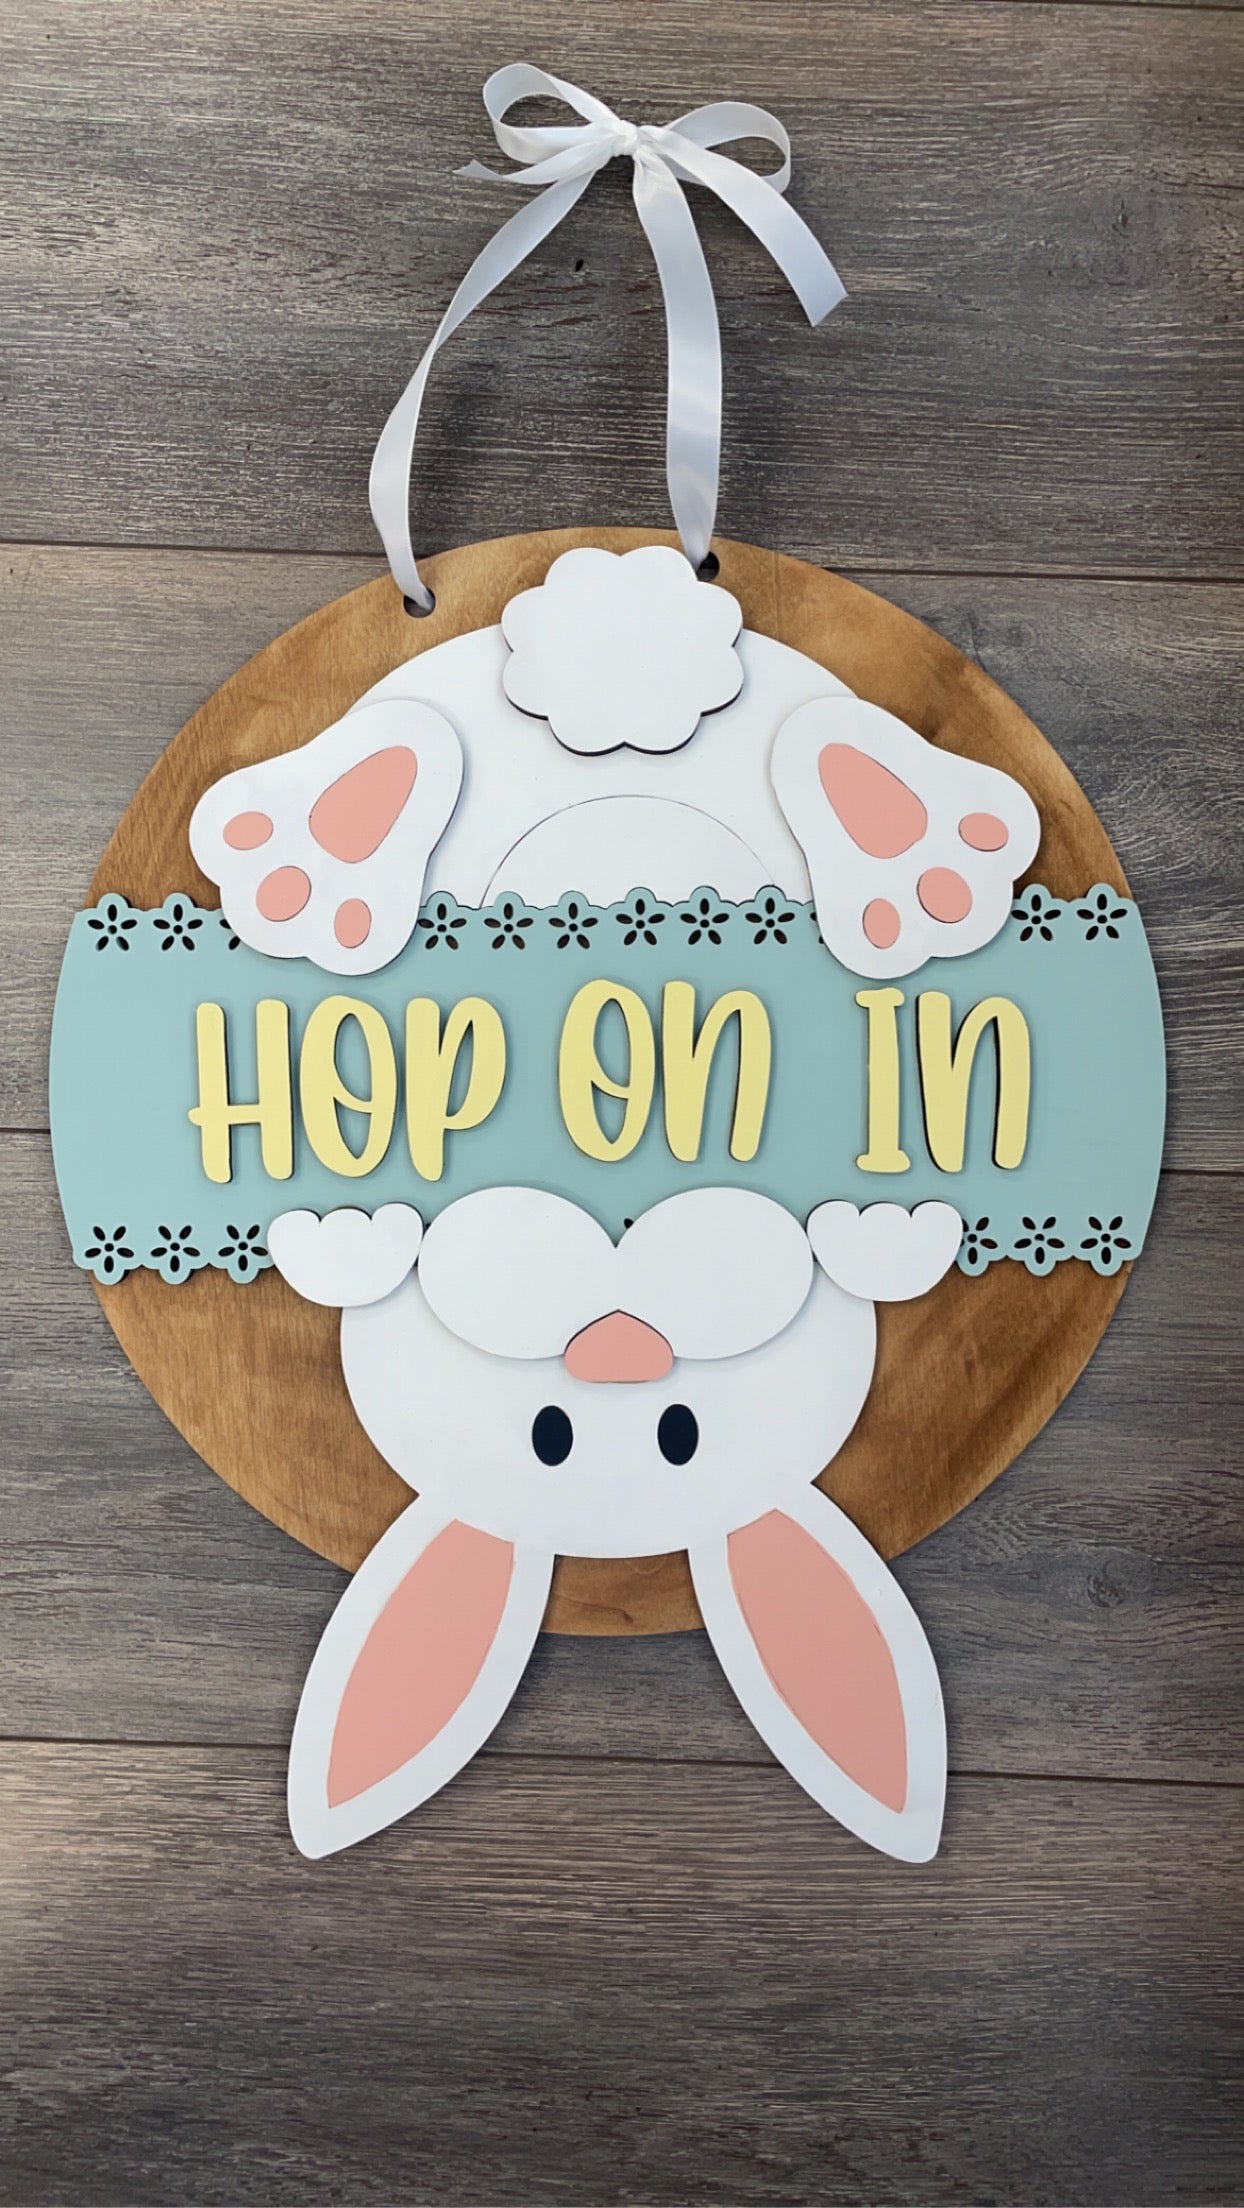 “Hop on in” Door Hanger Workshop